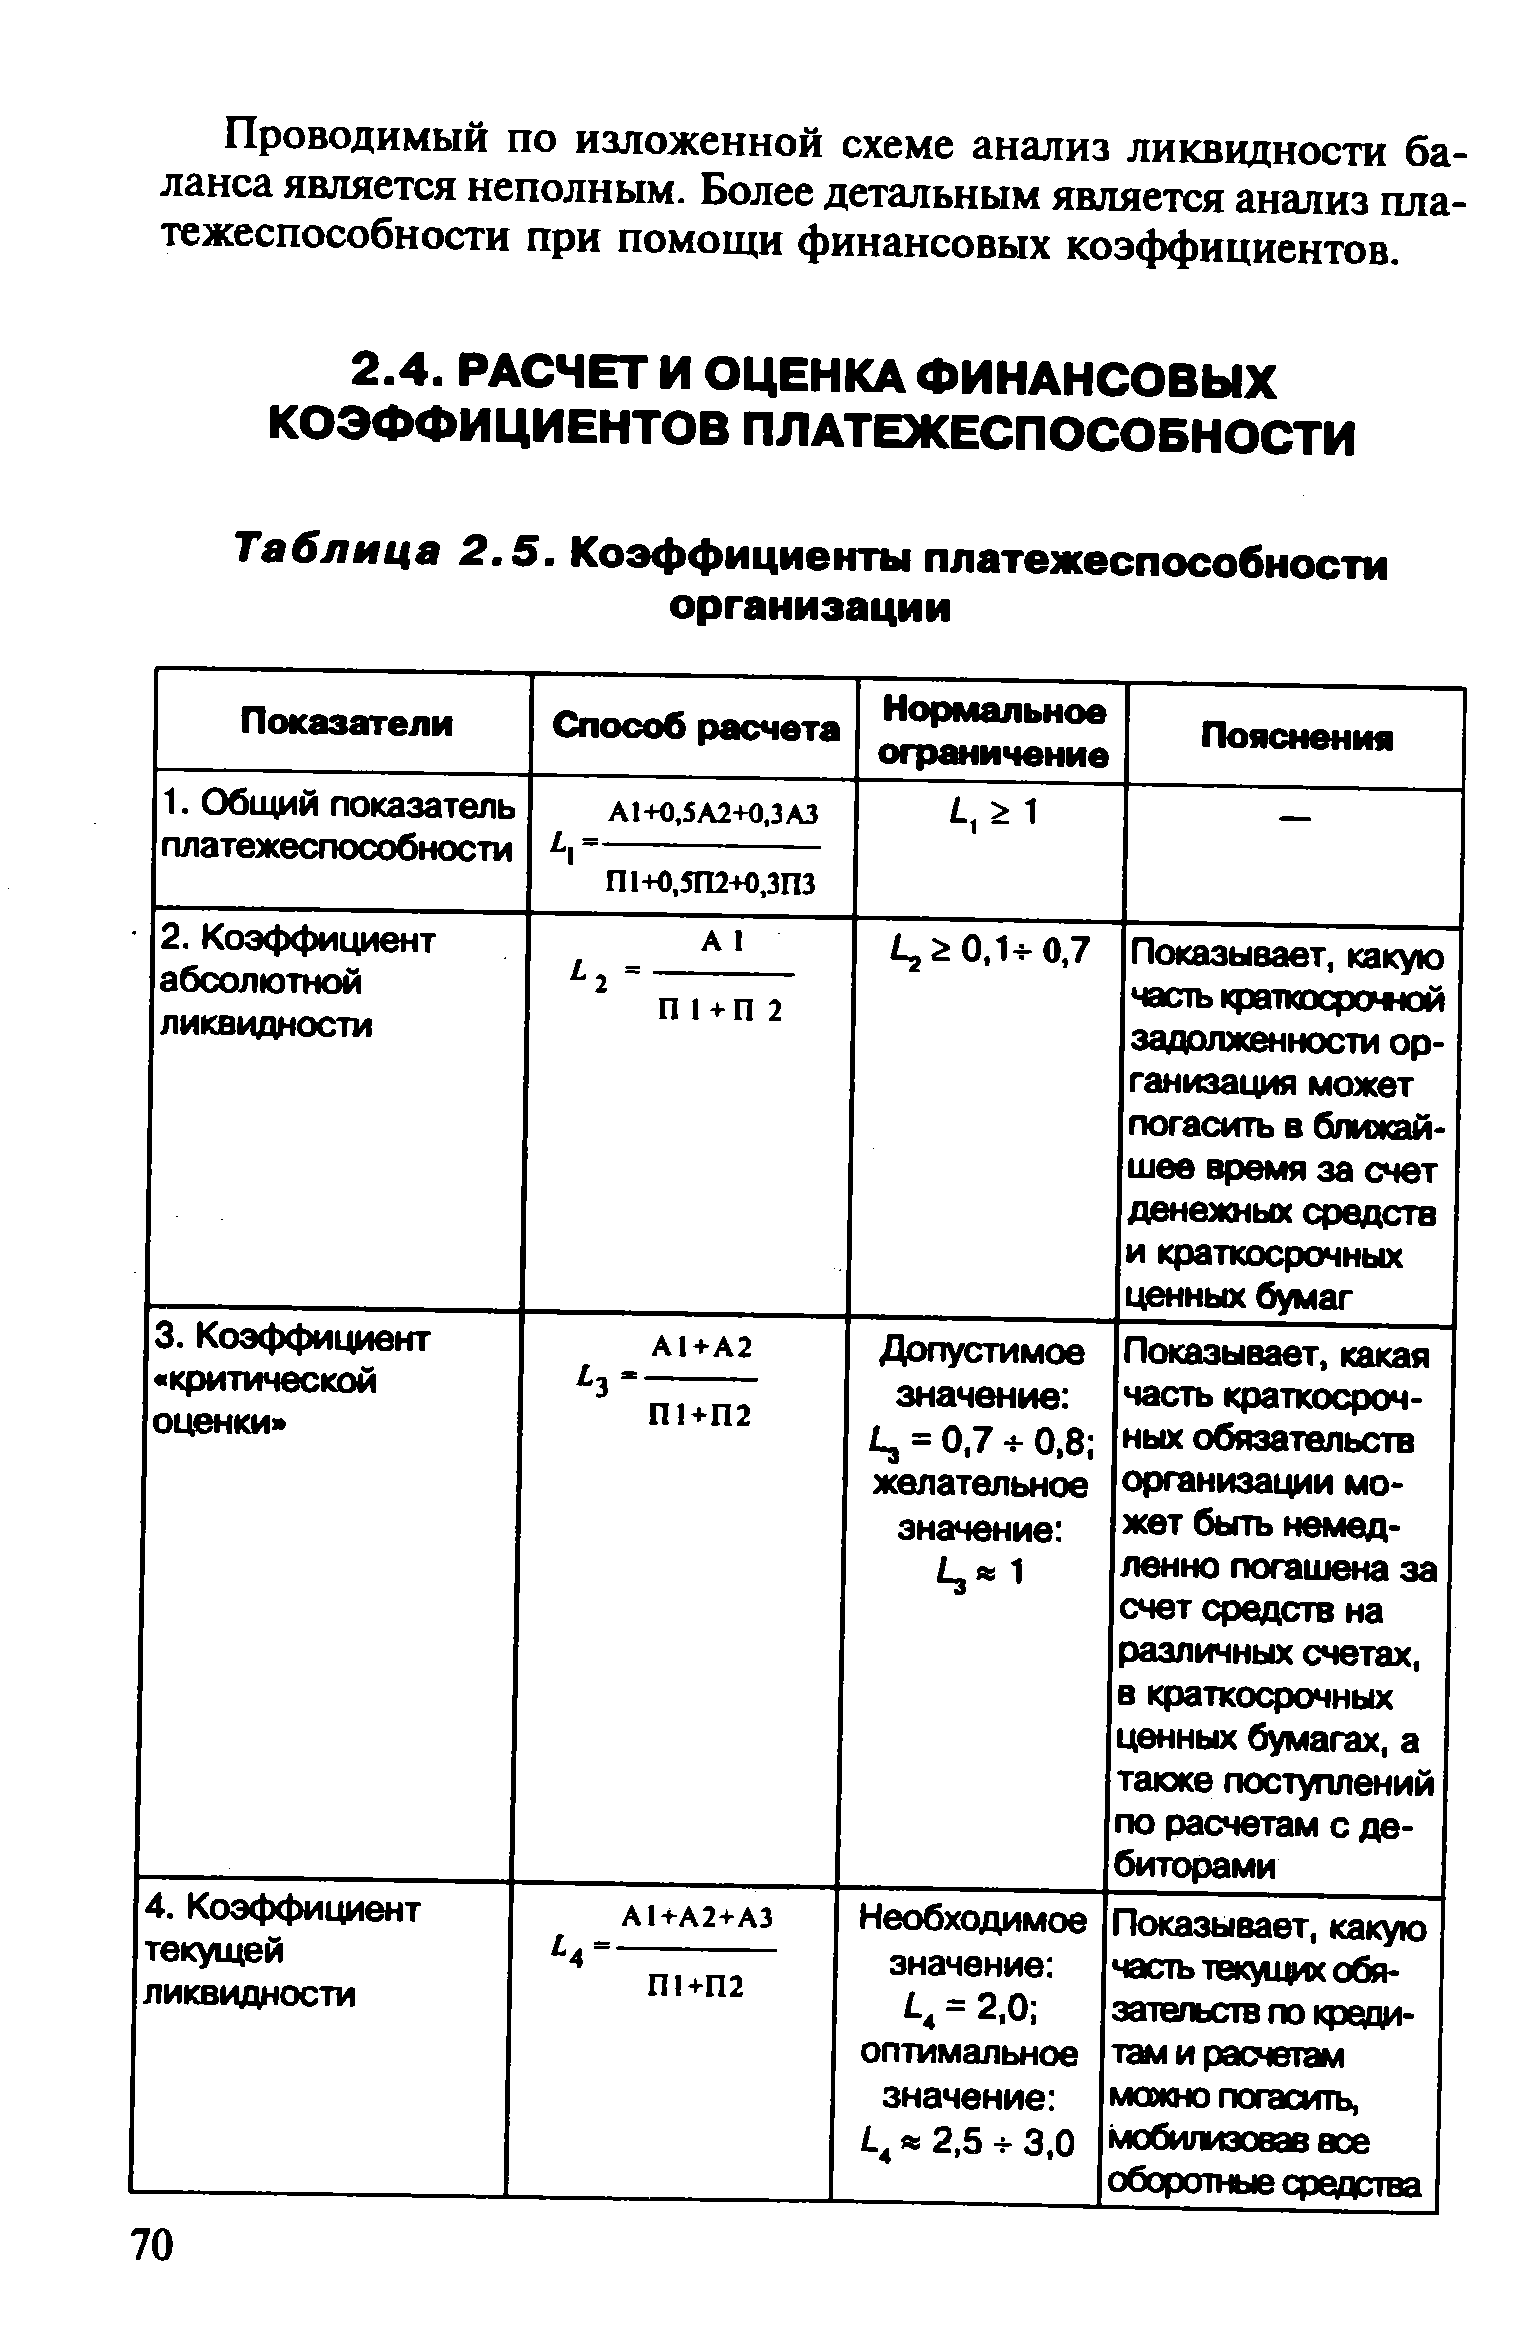 Таблица 2.5. Коэффициенты платежеспособности организации
